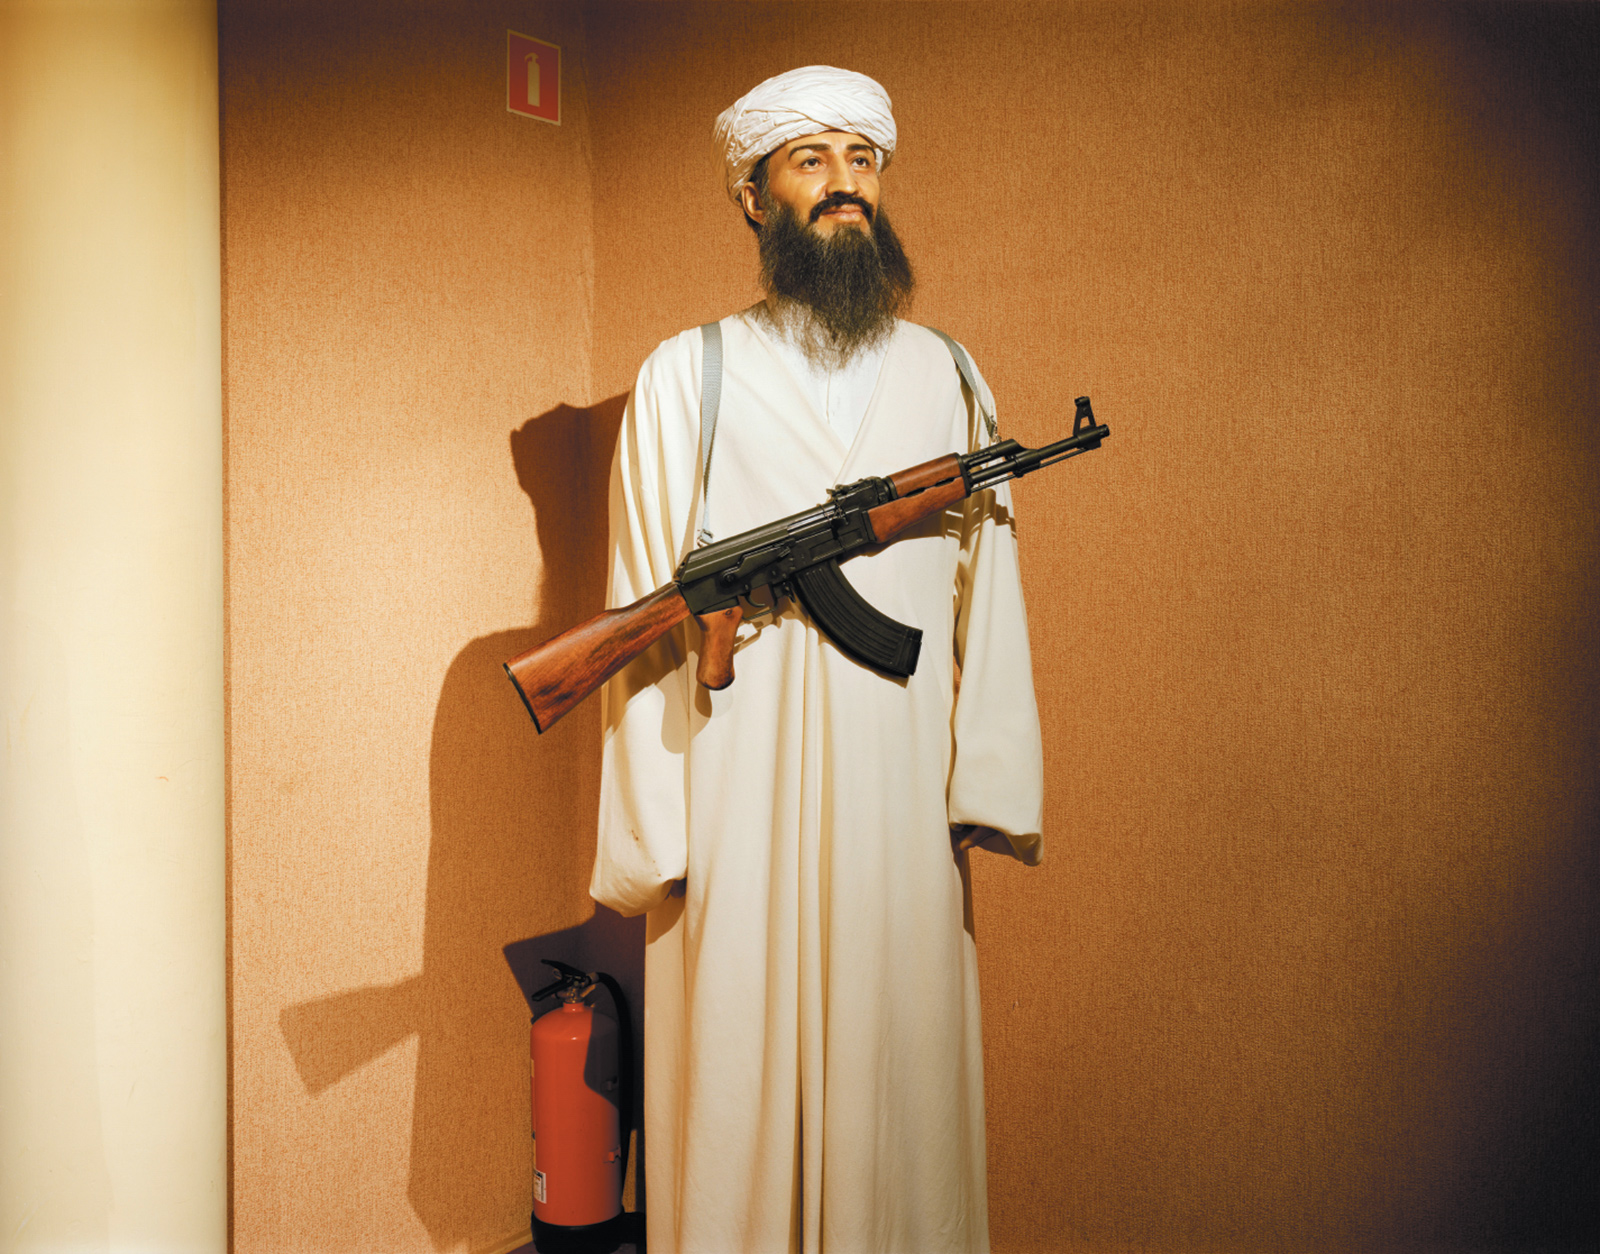 A wax figure of Osama bin Laden, Międzyzdroje, Poland, September 2008